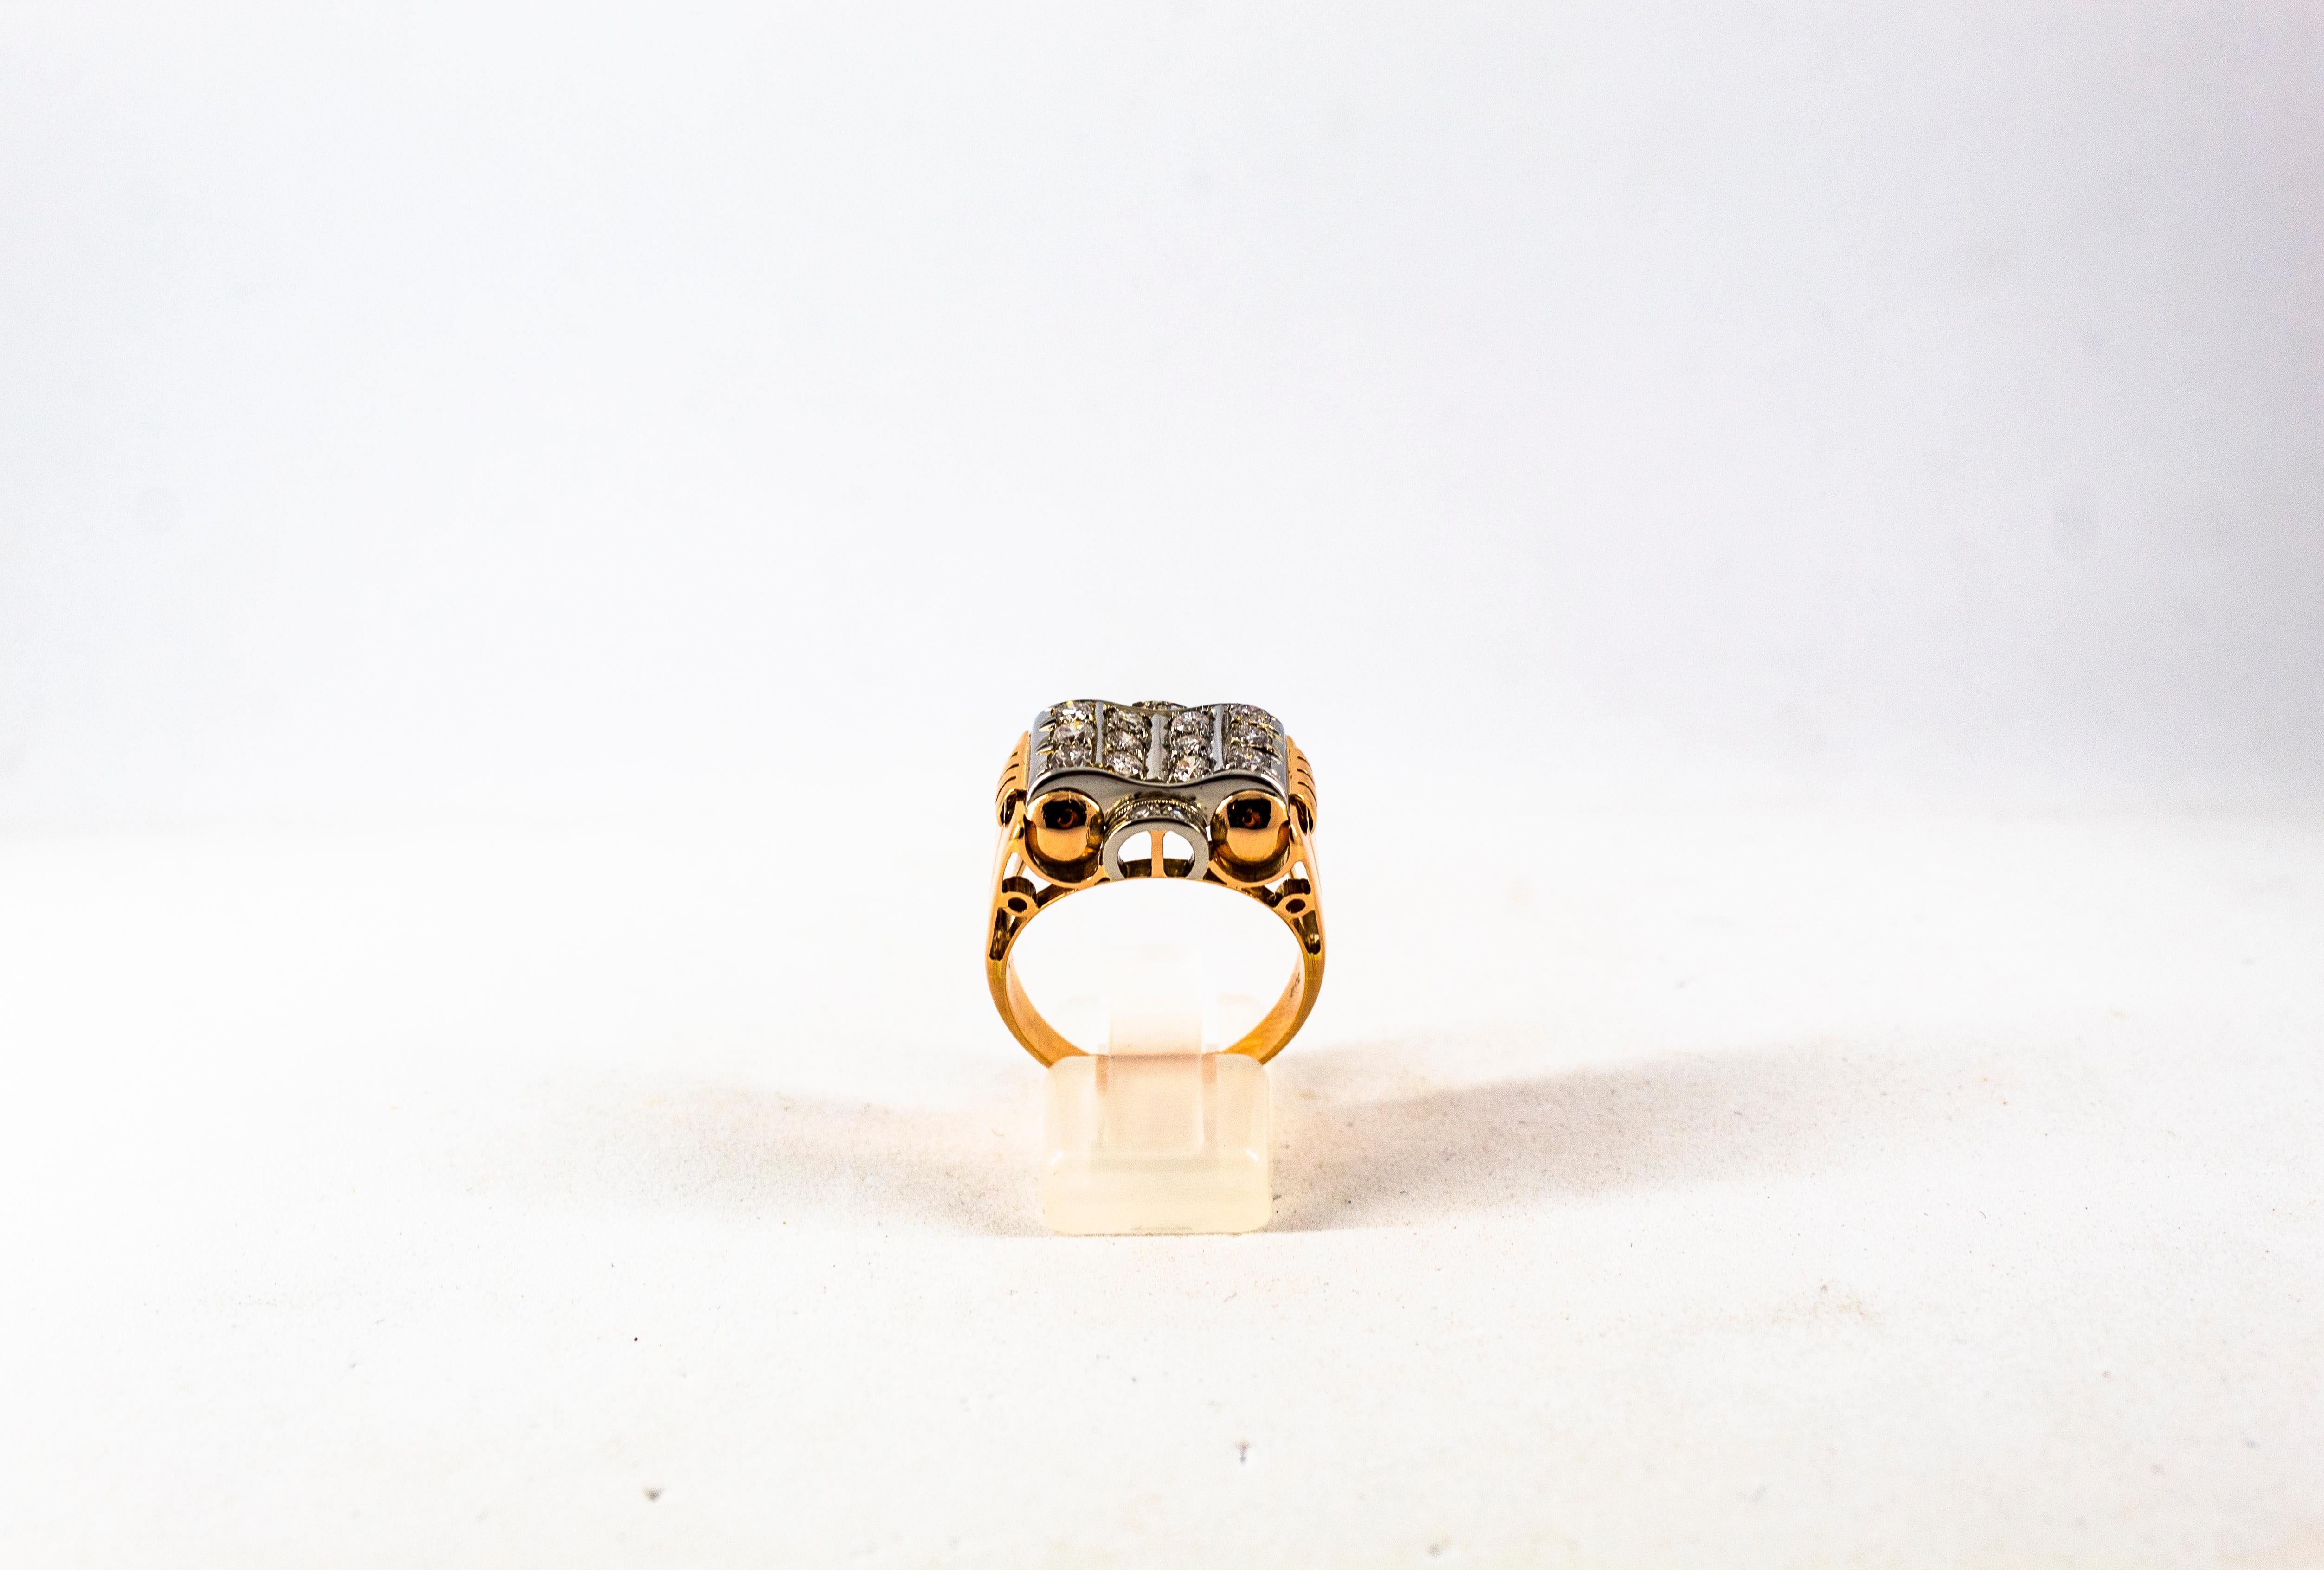 Dieser Ring ist aus 18K Gelbgold gefertigt.
Dieser Ring hat 0,80 Karat weiße moderne Diamanten im Rundschliff.
Größe ITA: 20 USA: 9
Da wir eine Werkstatt sind, ist jedes Stück handgefertigt, anpassbar und in der Größe veränderbar.